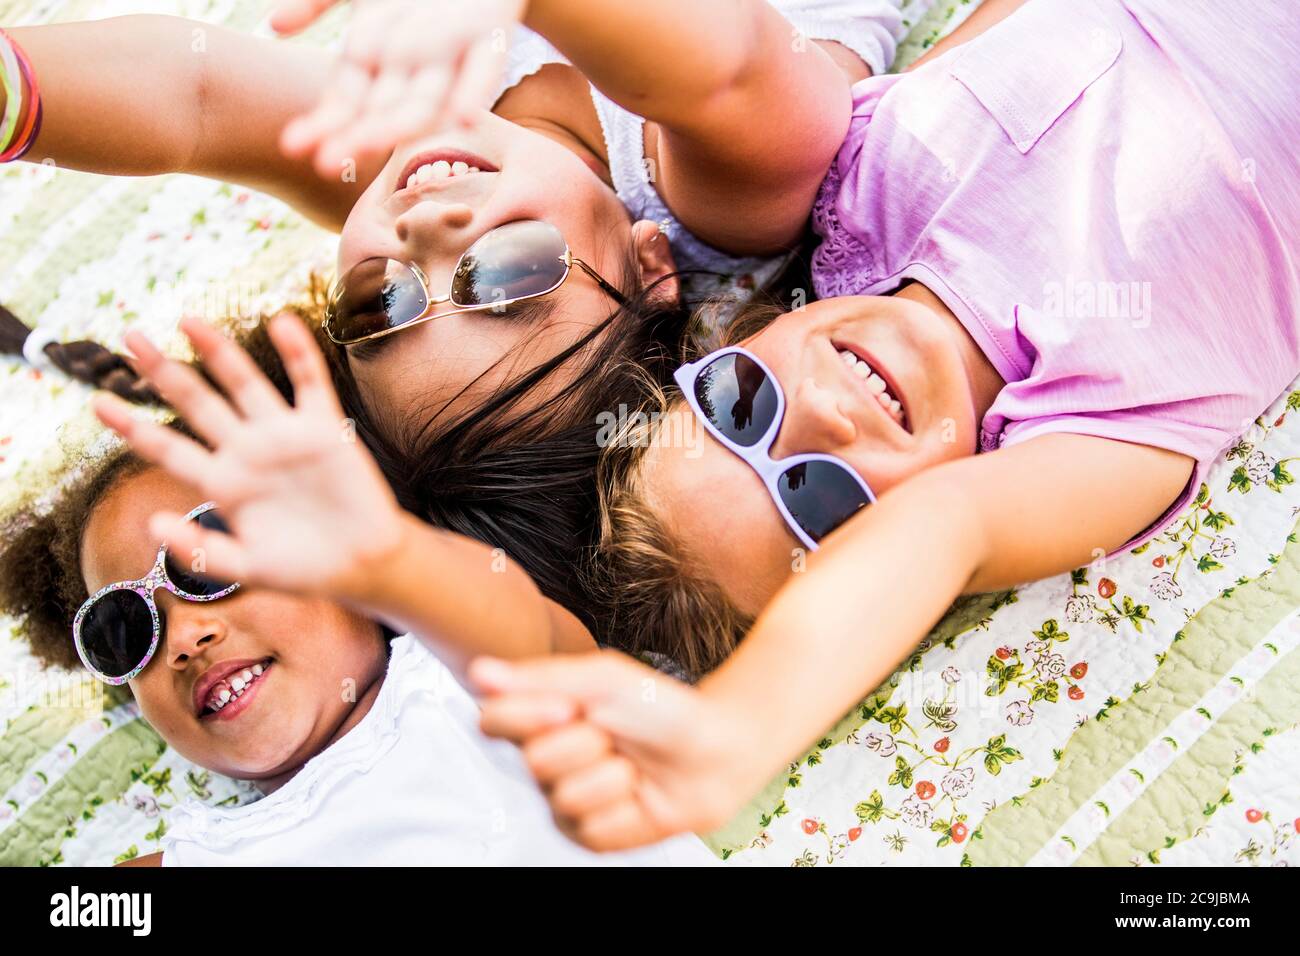 Las chicas que usan gafas de sol y están acostadas en una manta en el parque. Foto de stock